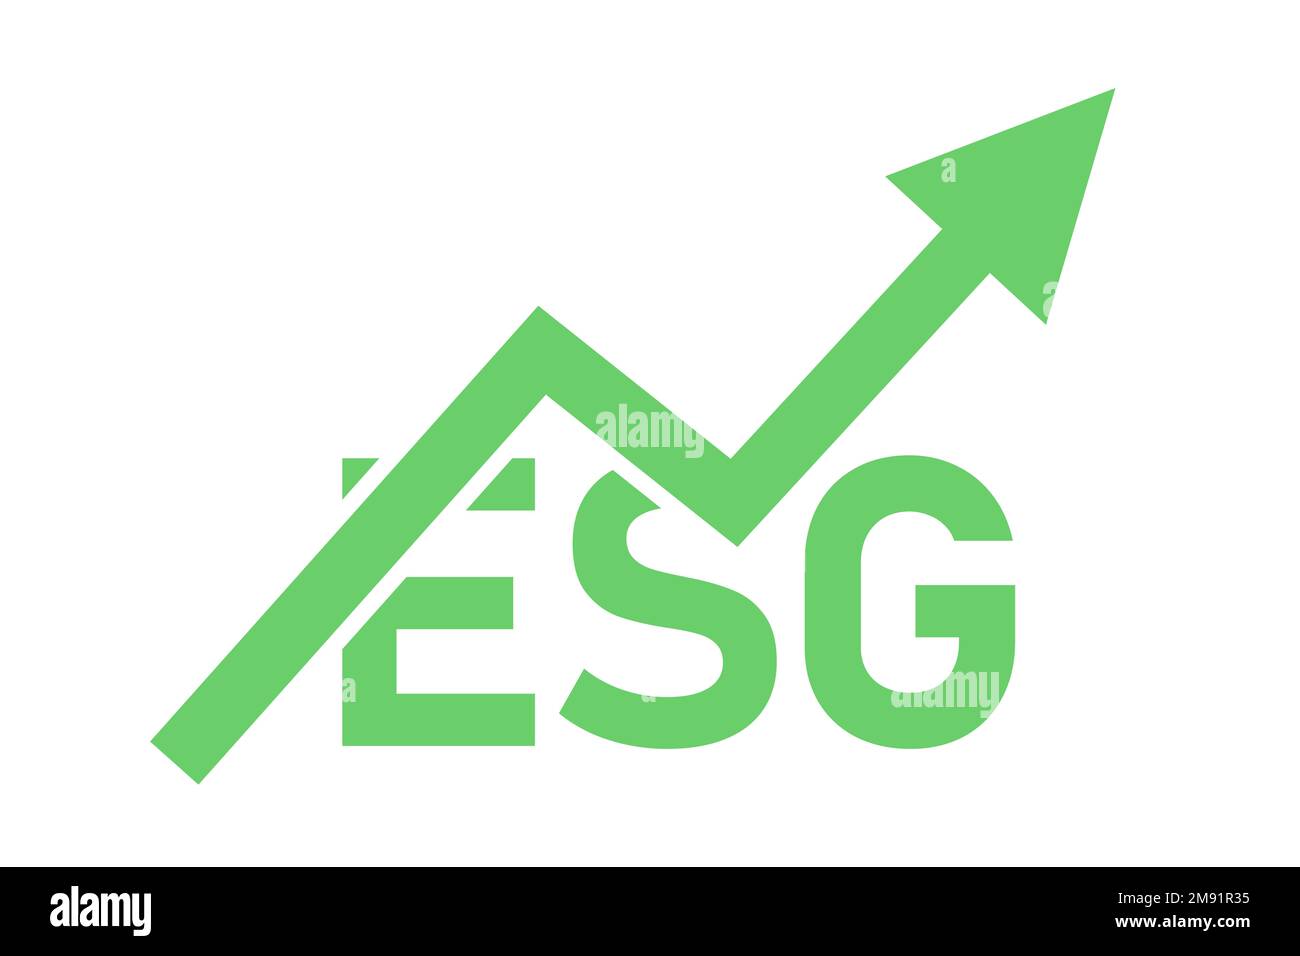 ESG e investimenti socialmente responsabili. Investimenti finanziari e responsabilità sociale e ambientale. Testo e freccia che mostrano profitti, crescita e ri Foto Stock